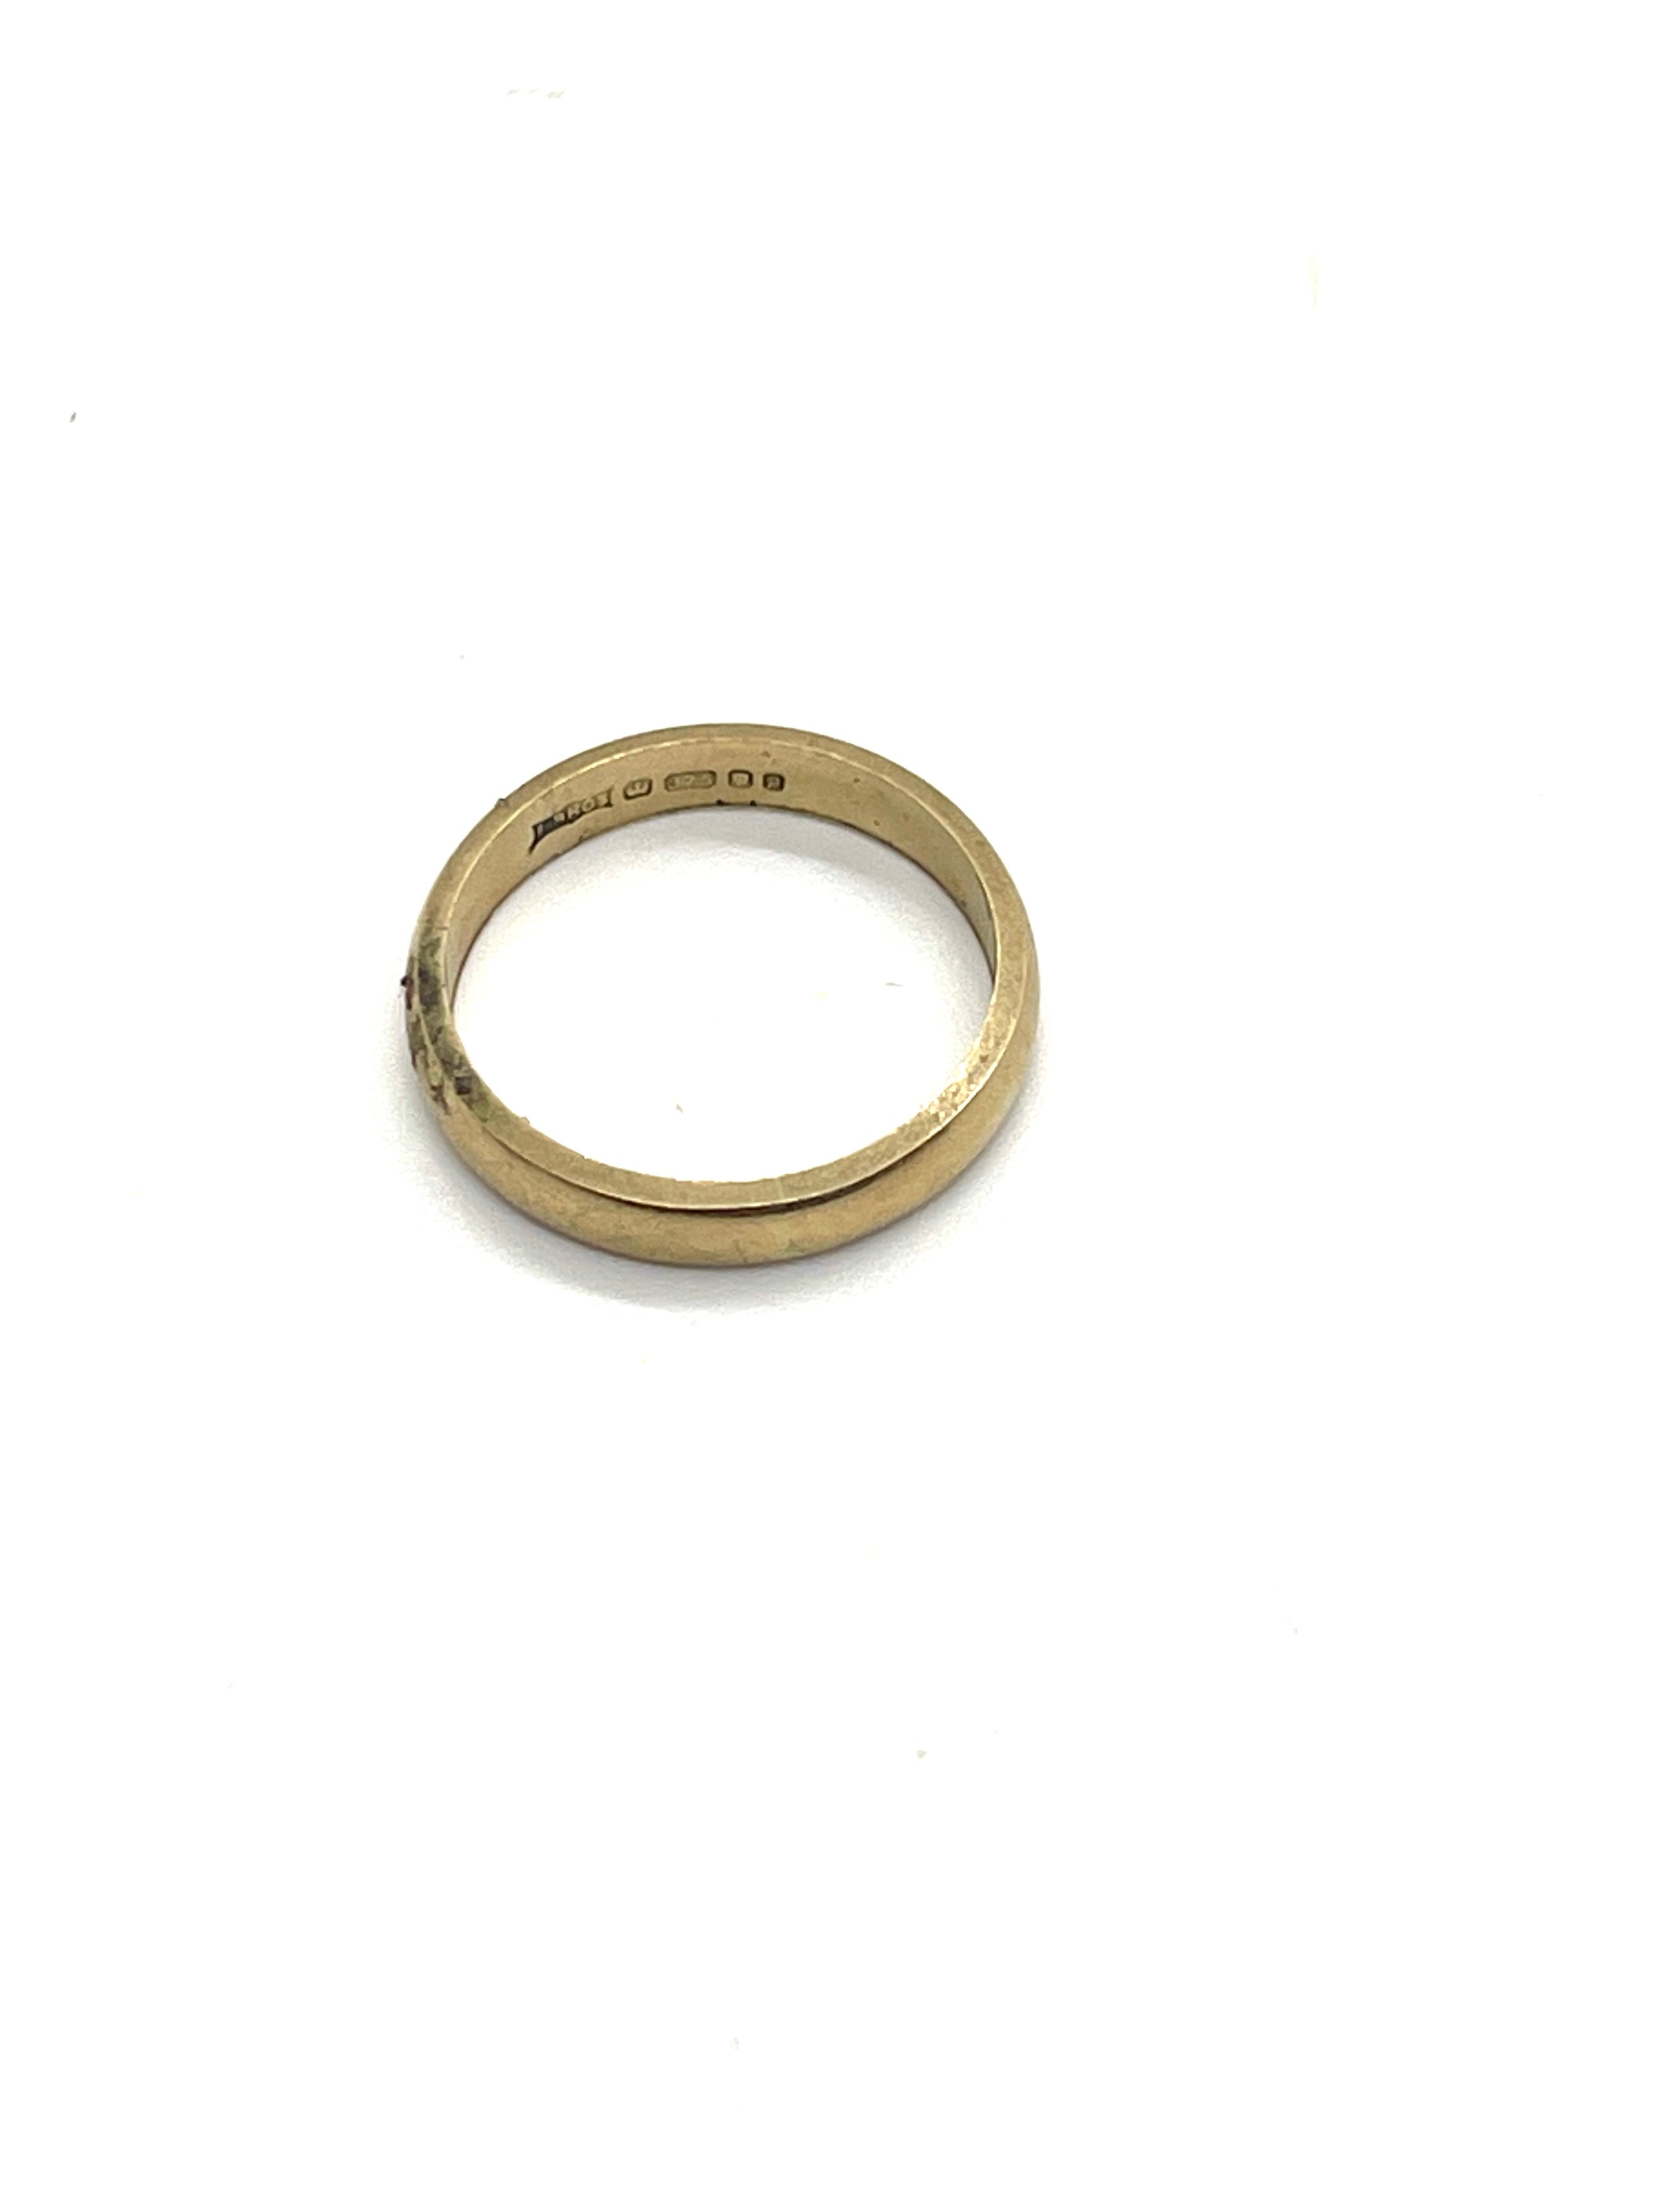 Ladies 9ct gold wedding band, ring size I/J, total weight 1.8 - Bild 3 aus 3